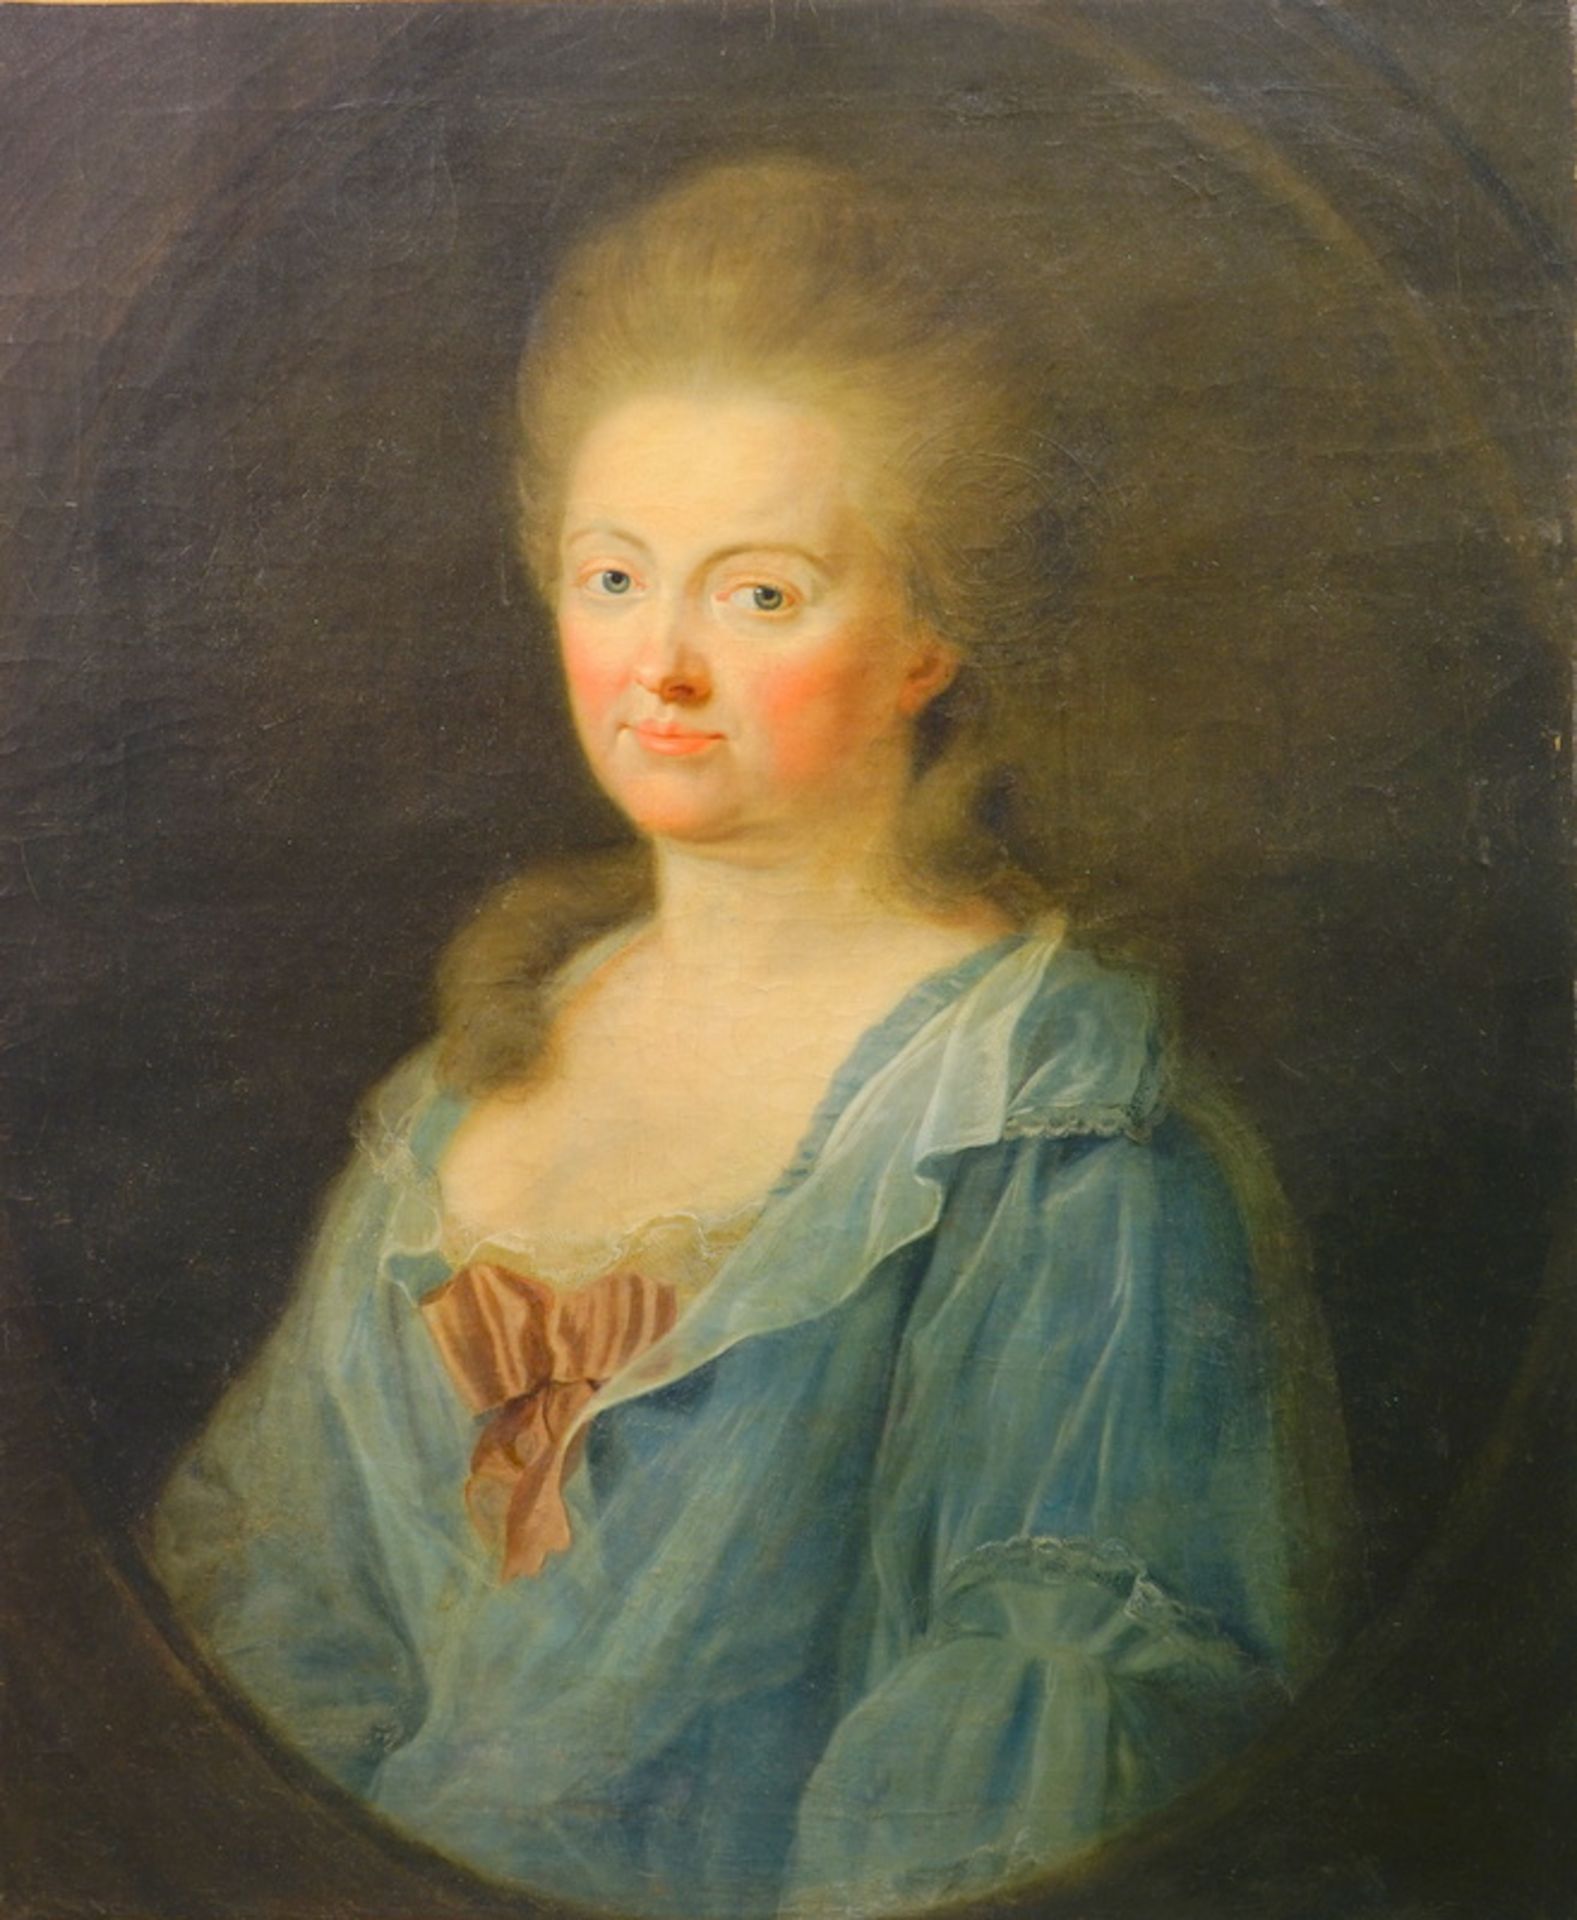 Tischbein (zugeschrieben), Johann Heinrich Wilhelm: Porträt der Gräfin von Zinzendorf, ca. um 1820